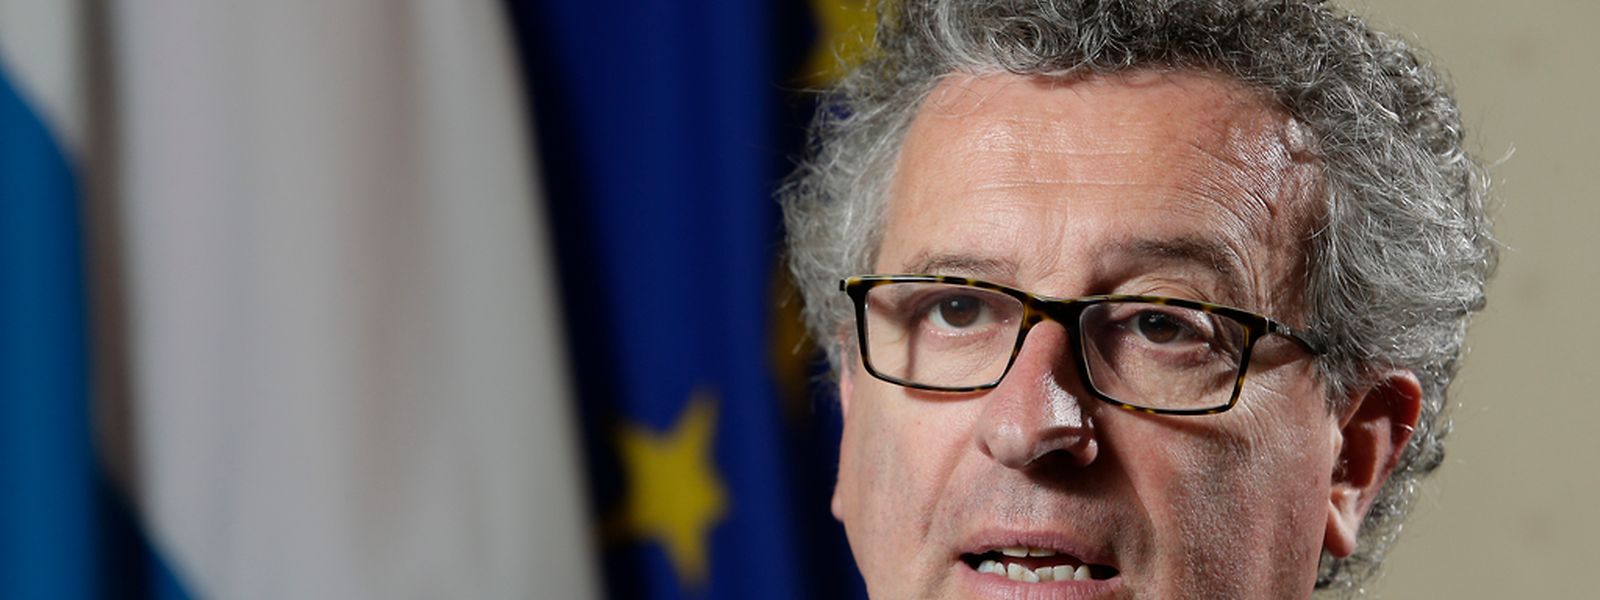 Pierre Gramegna hatte noch Anfang November in einem Interview beteuert, dass Luxemburg der EU-Kommission keine detaillierte Auskunft über die gewährten Steuerrulings geben wolle. Jetzt sieht die Lage anders aus.